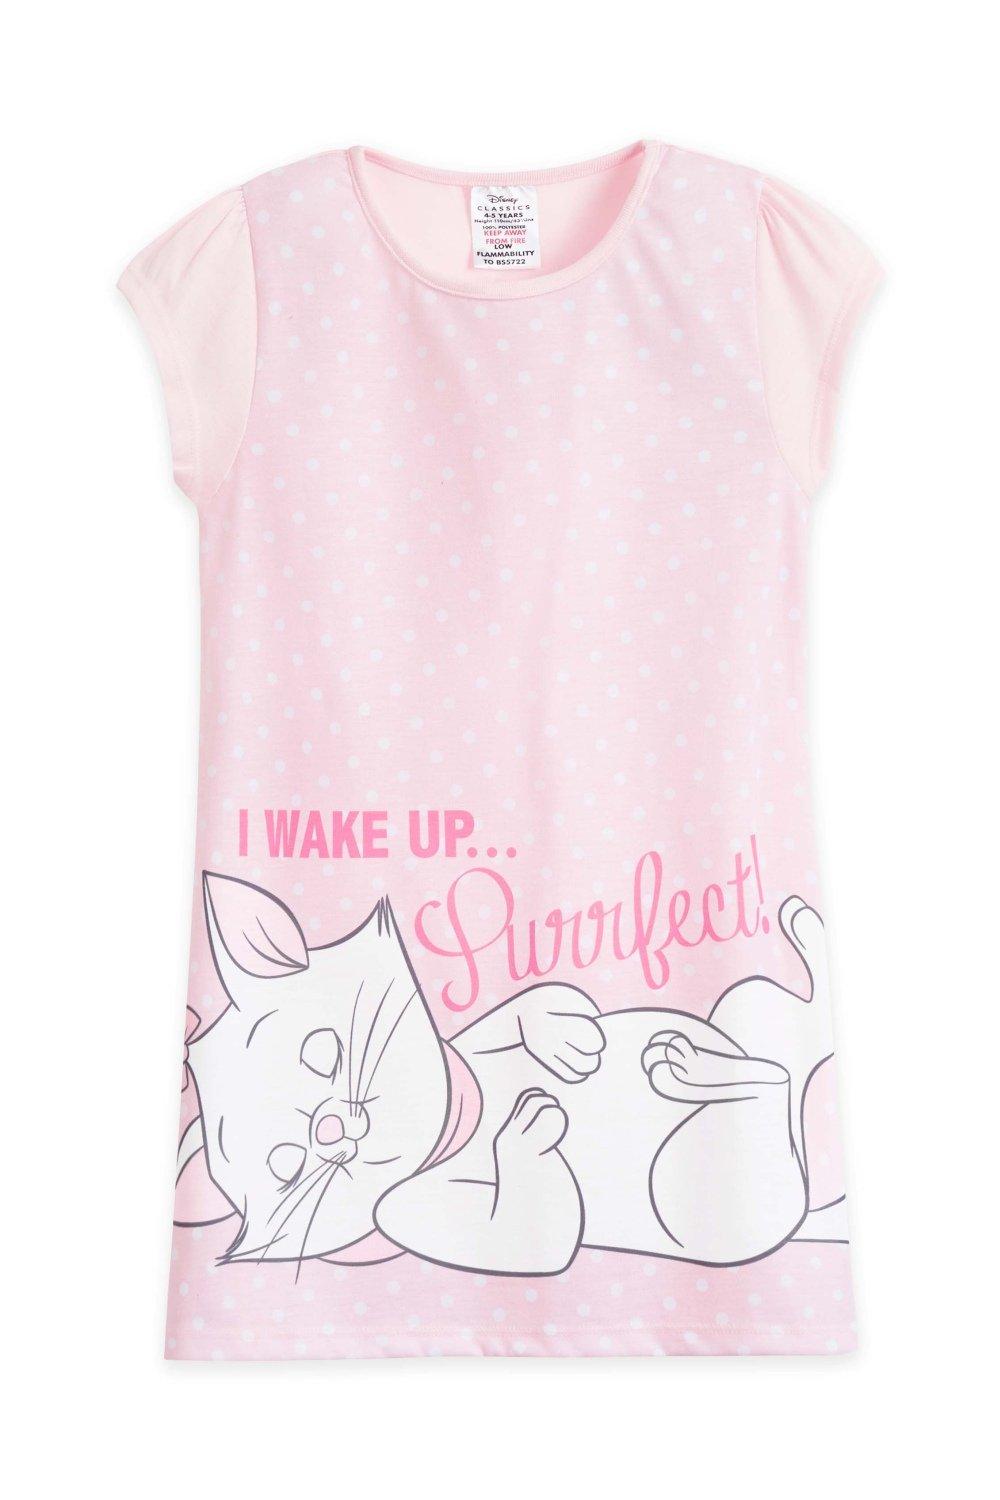 Ночная рубашка Marie с коротким рукавом Disney, розовый disney удочка дразнилка disney marie подушечка